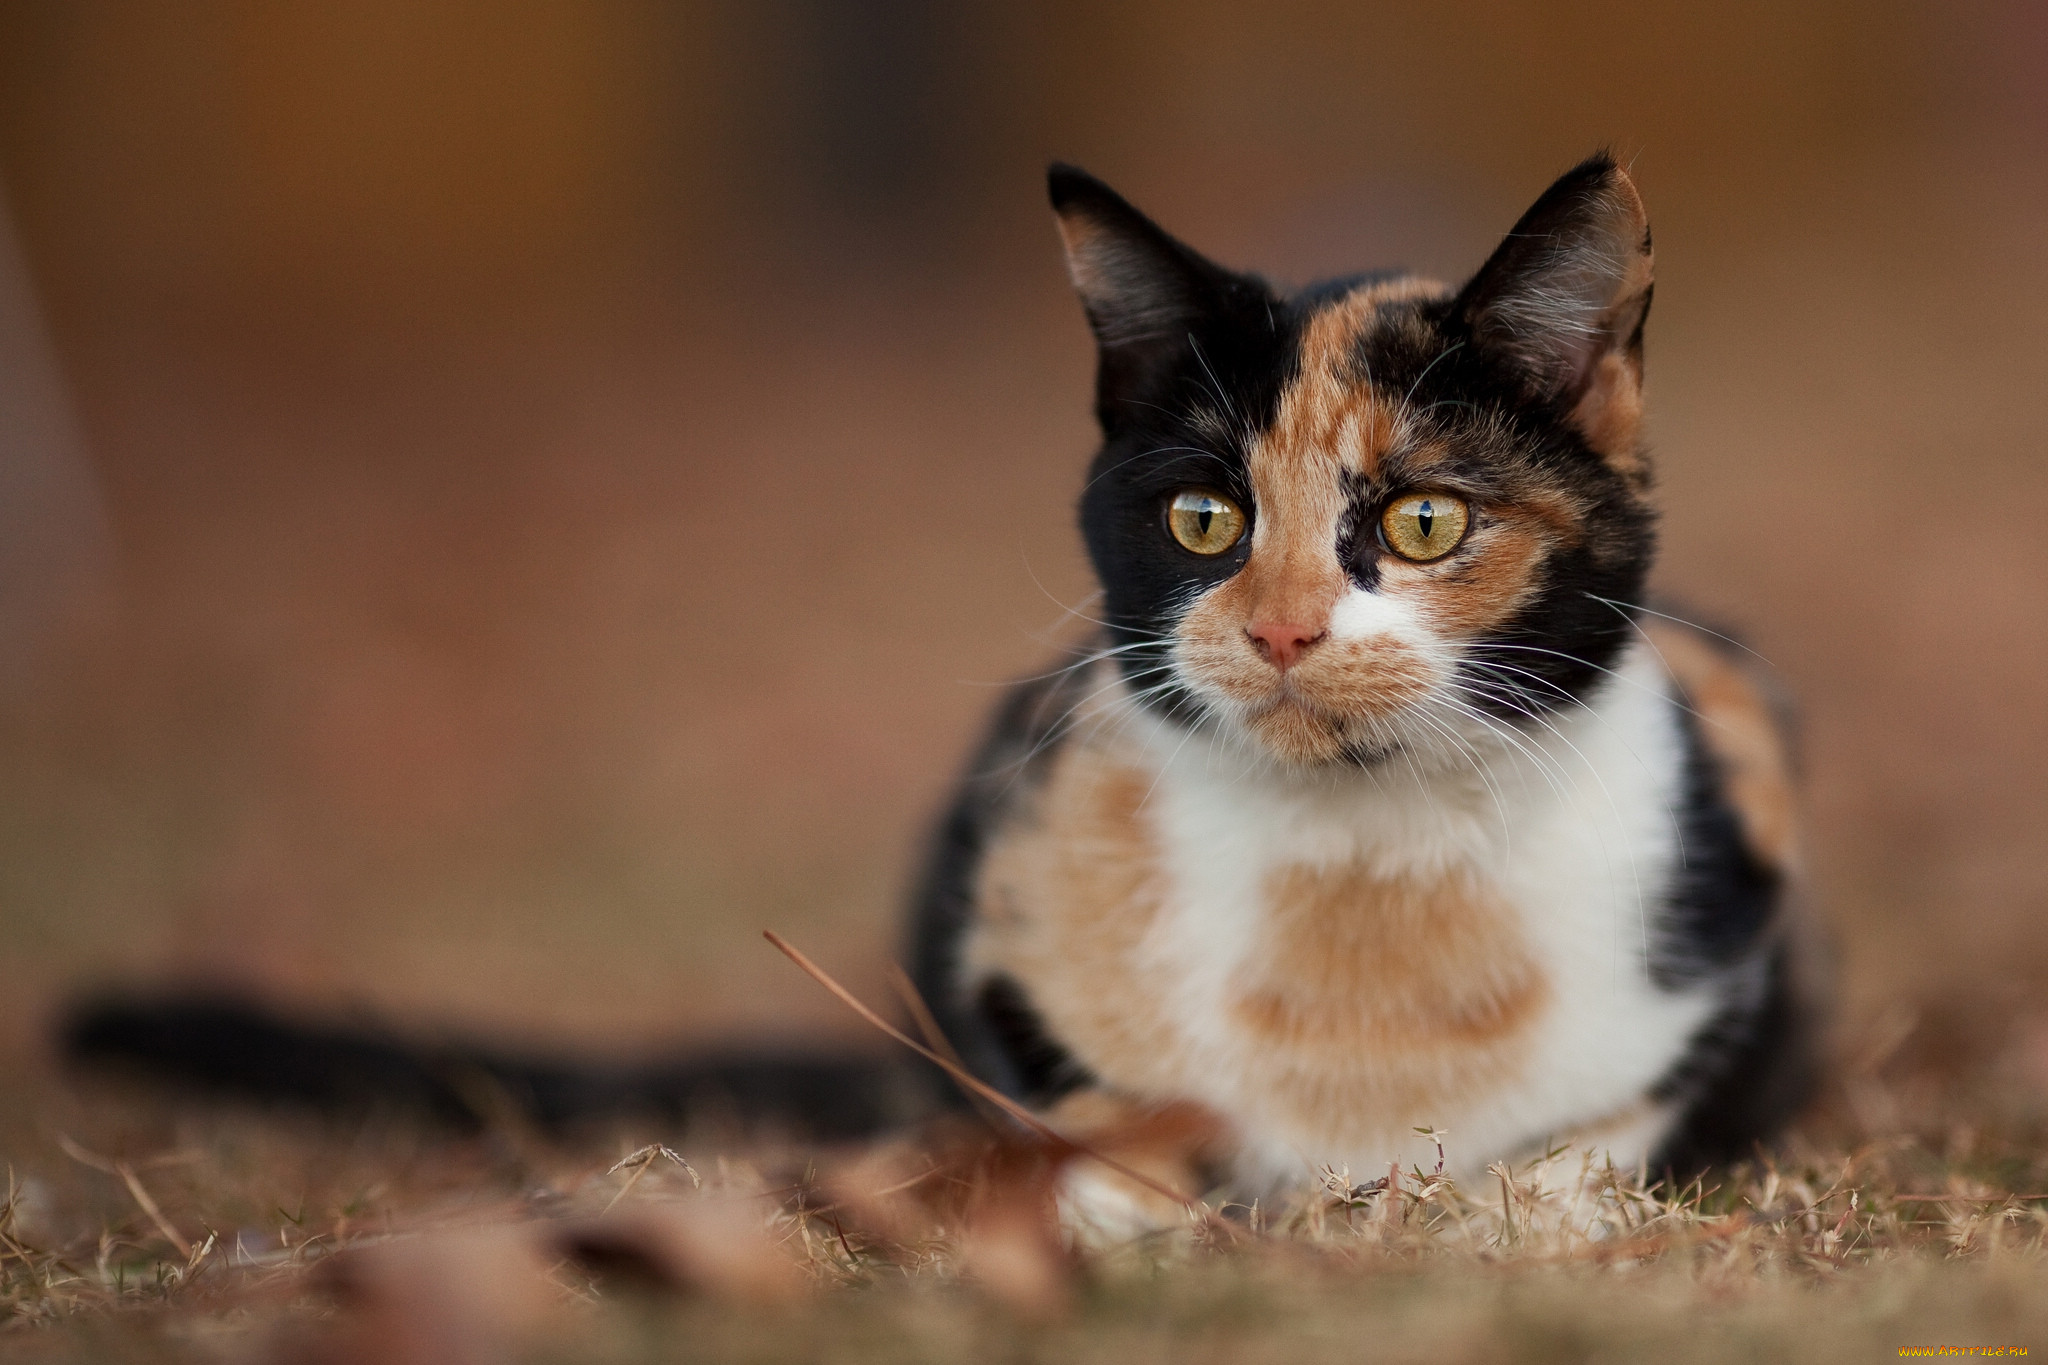 Пестрый кот. Трехшерстная кошка порода. Порода Калико. Эгейская кошка трехцветная. Кошка породы Калико.